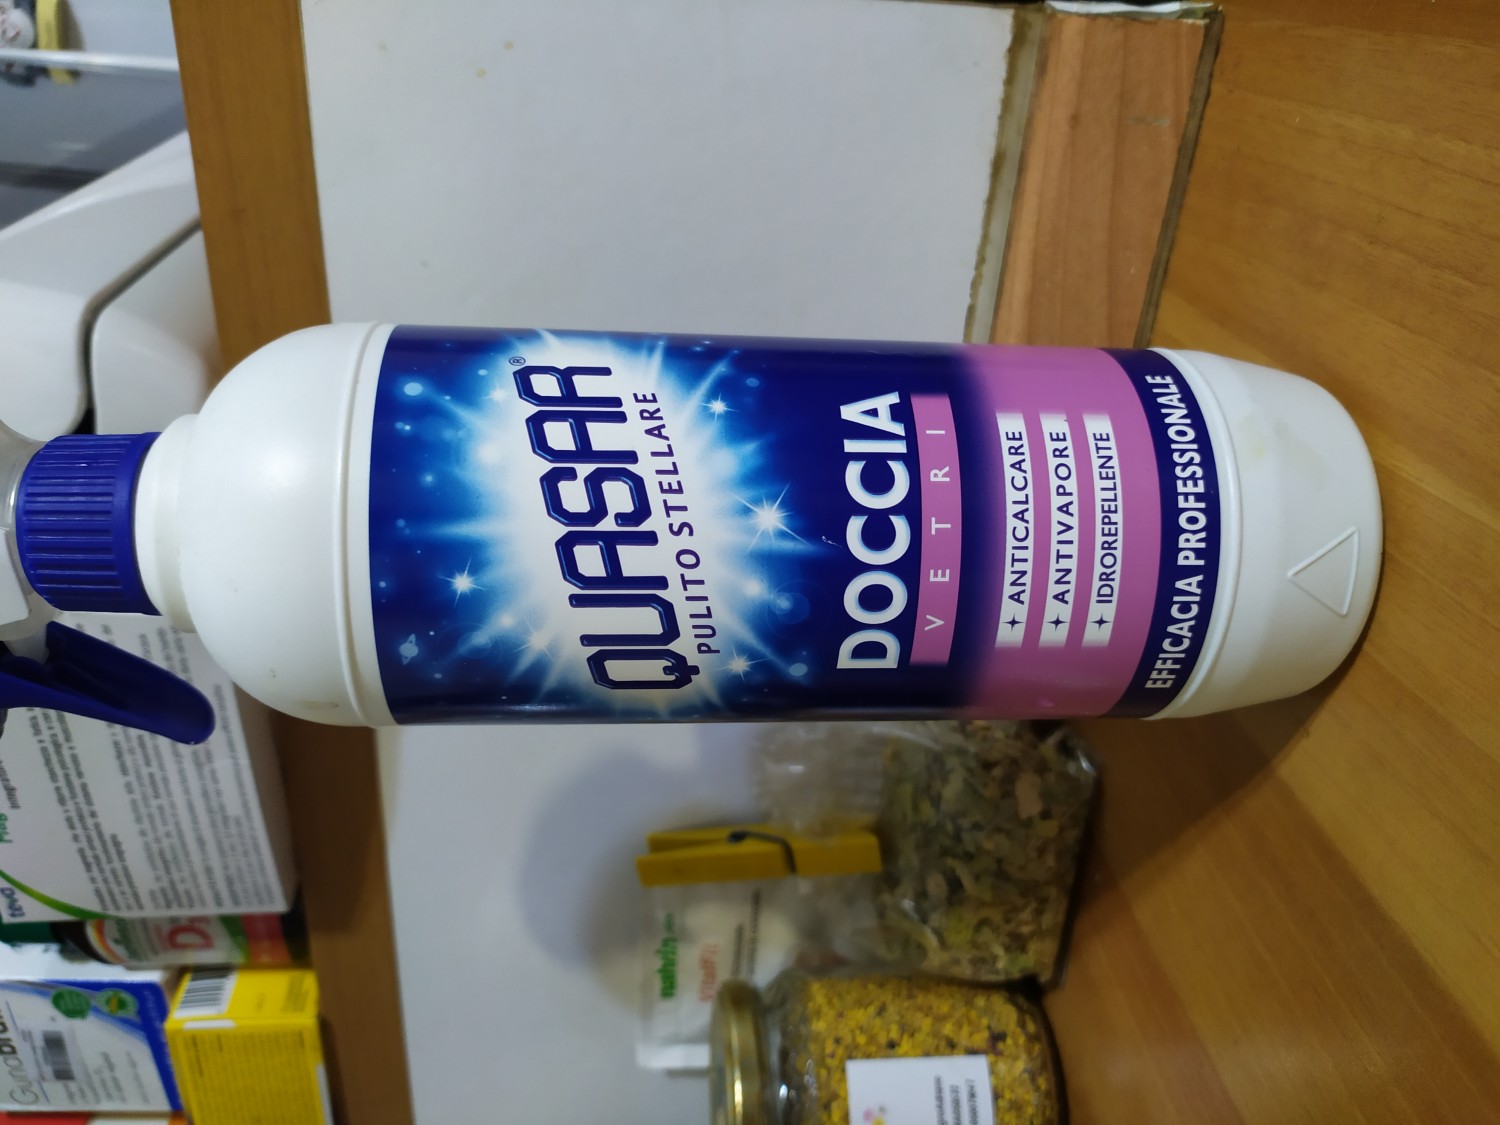 Quasar Detergente Bagno, Anticalcare, 650ml : : Salute e cura  della persona